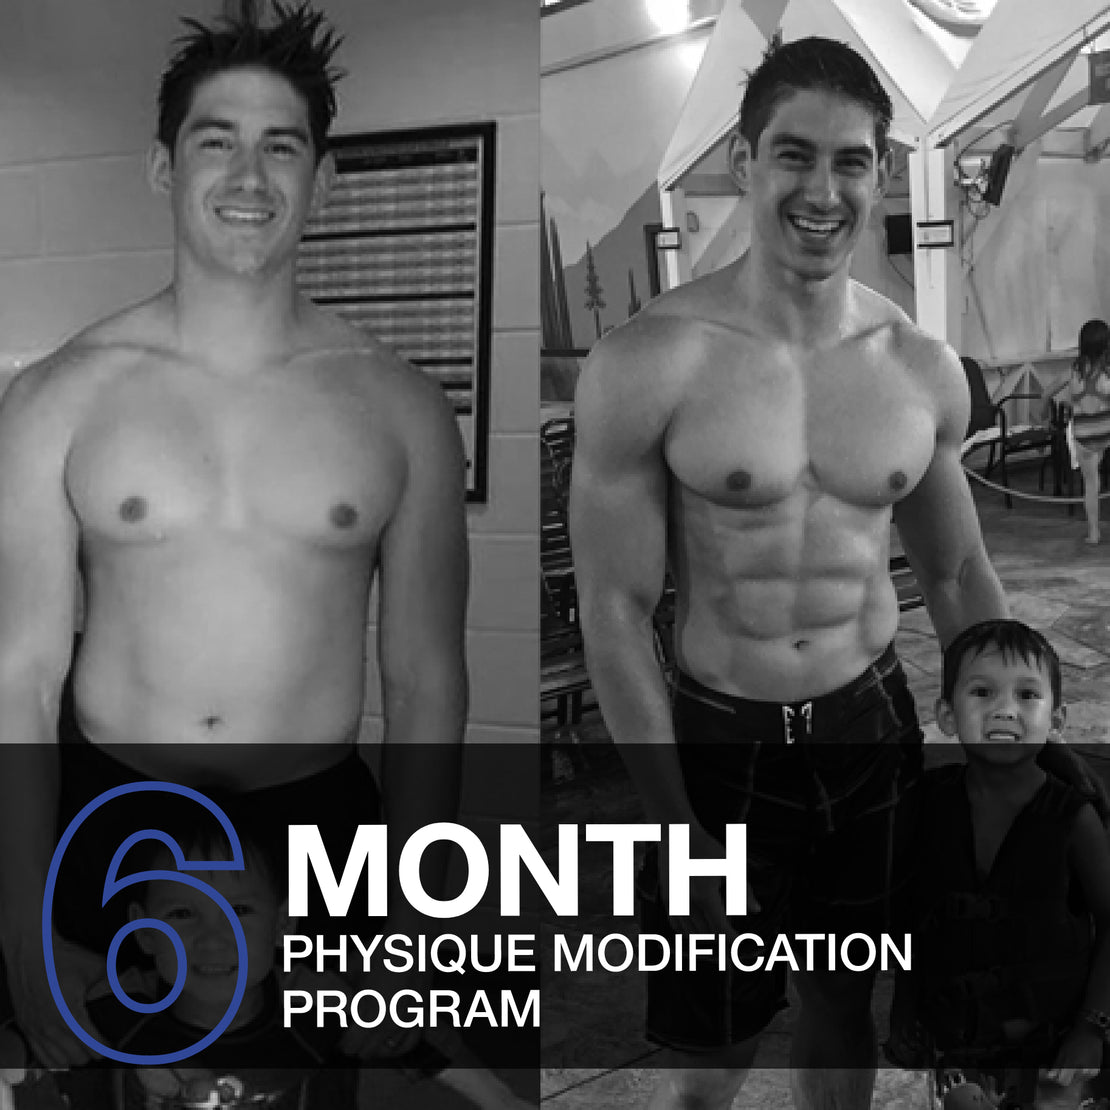 6 Month Physique Modification Program